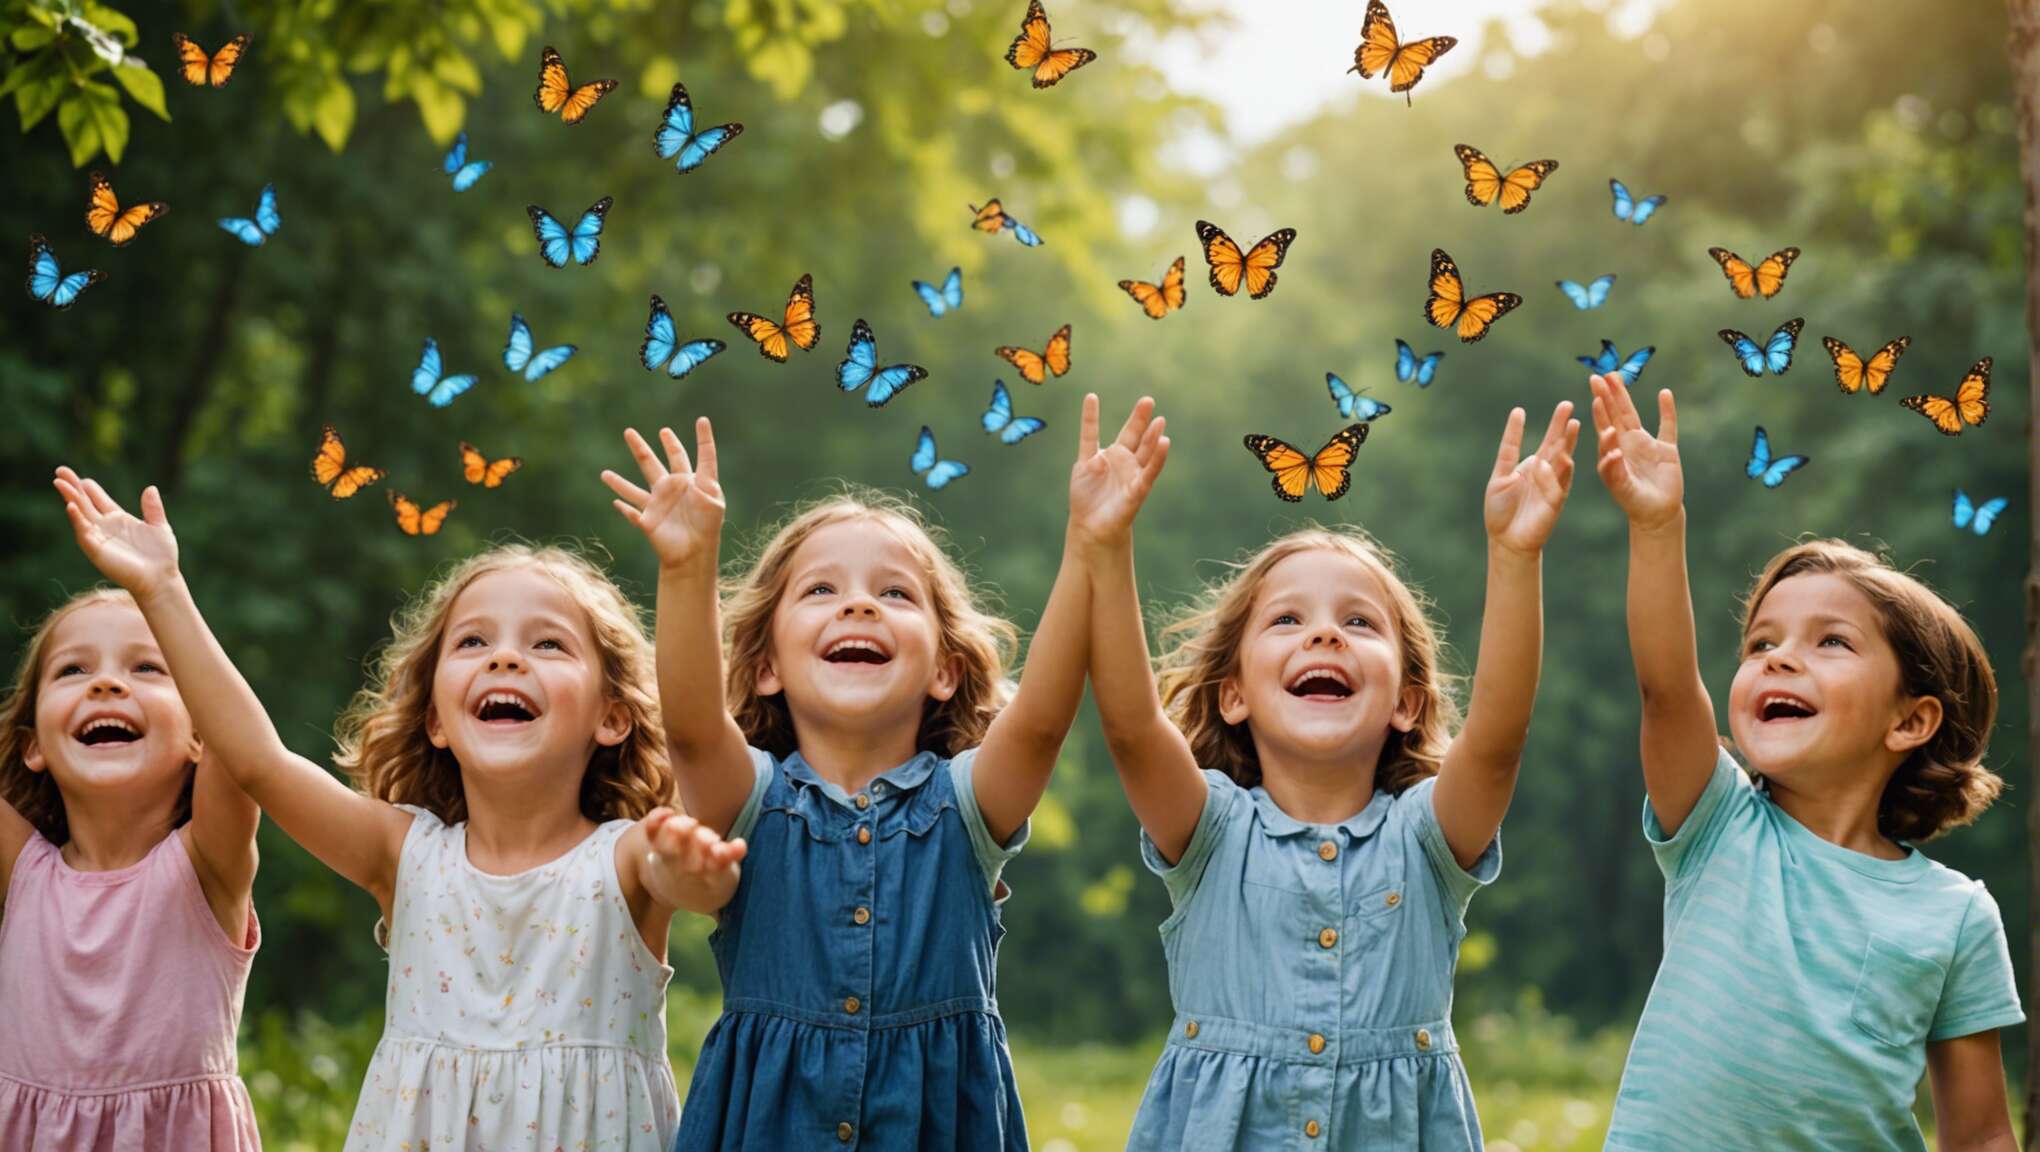 Comment créer une activité d'envolée de papillons ludique pour vos enfants ?